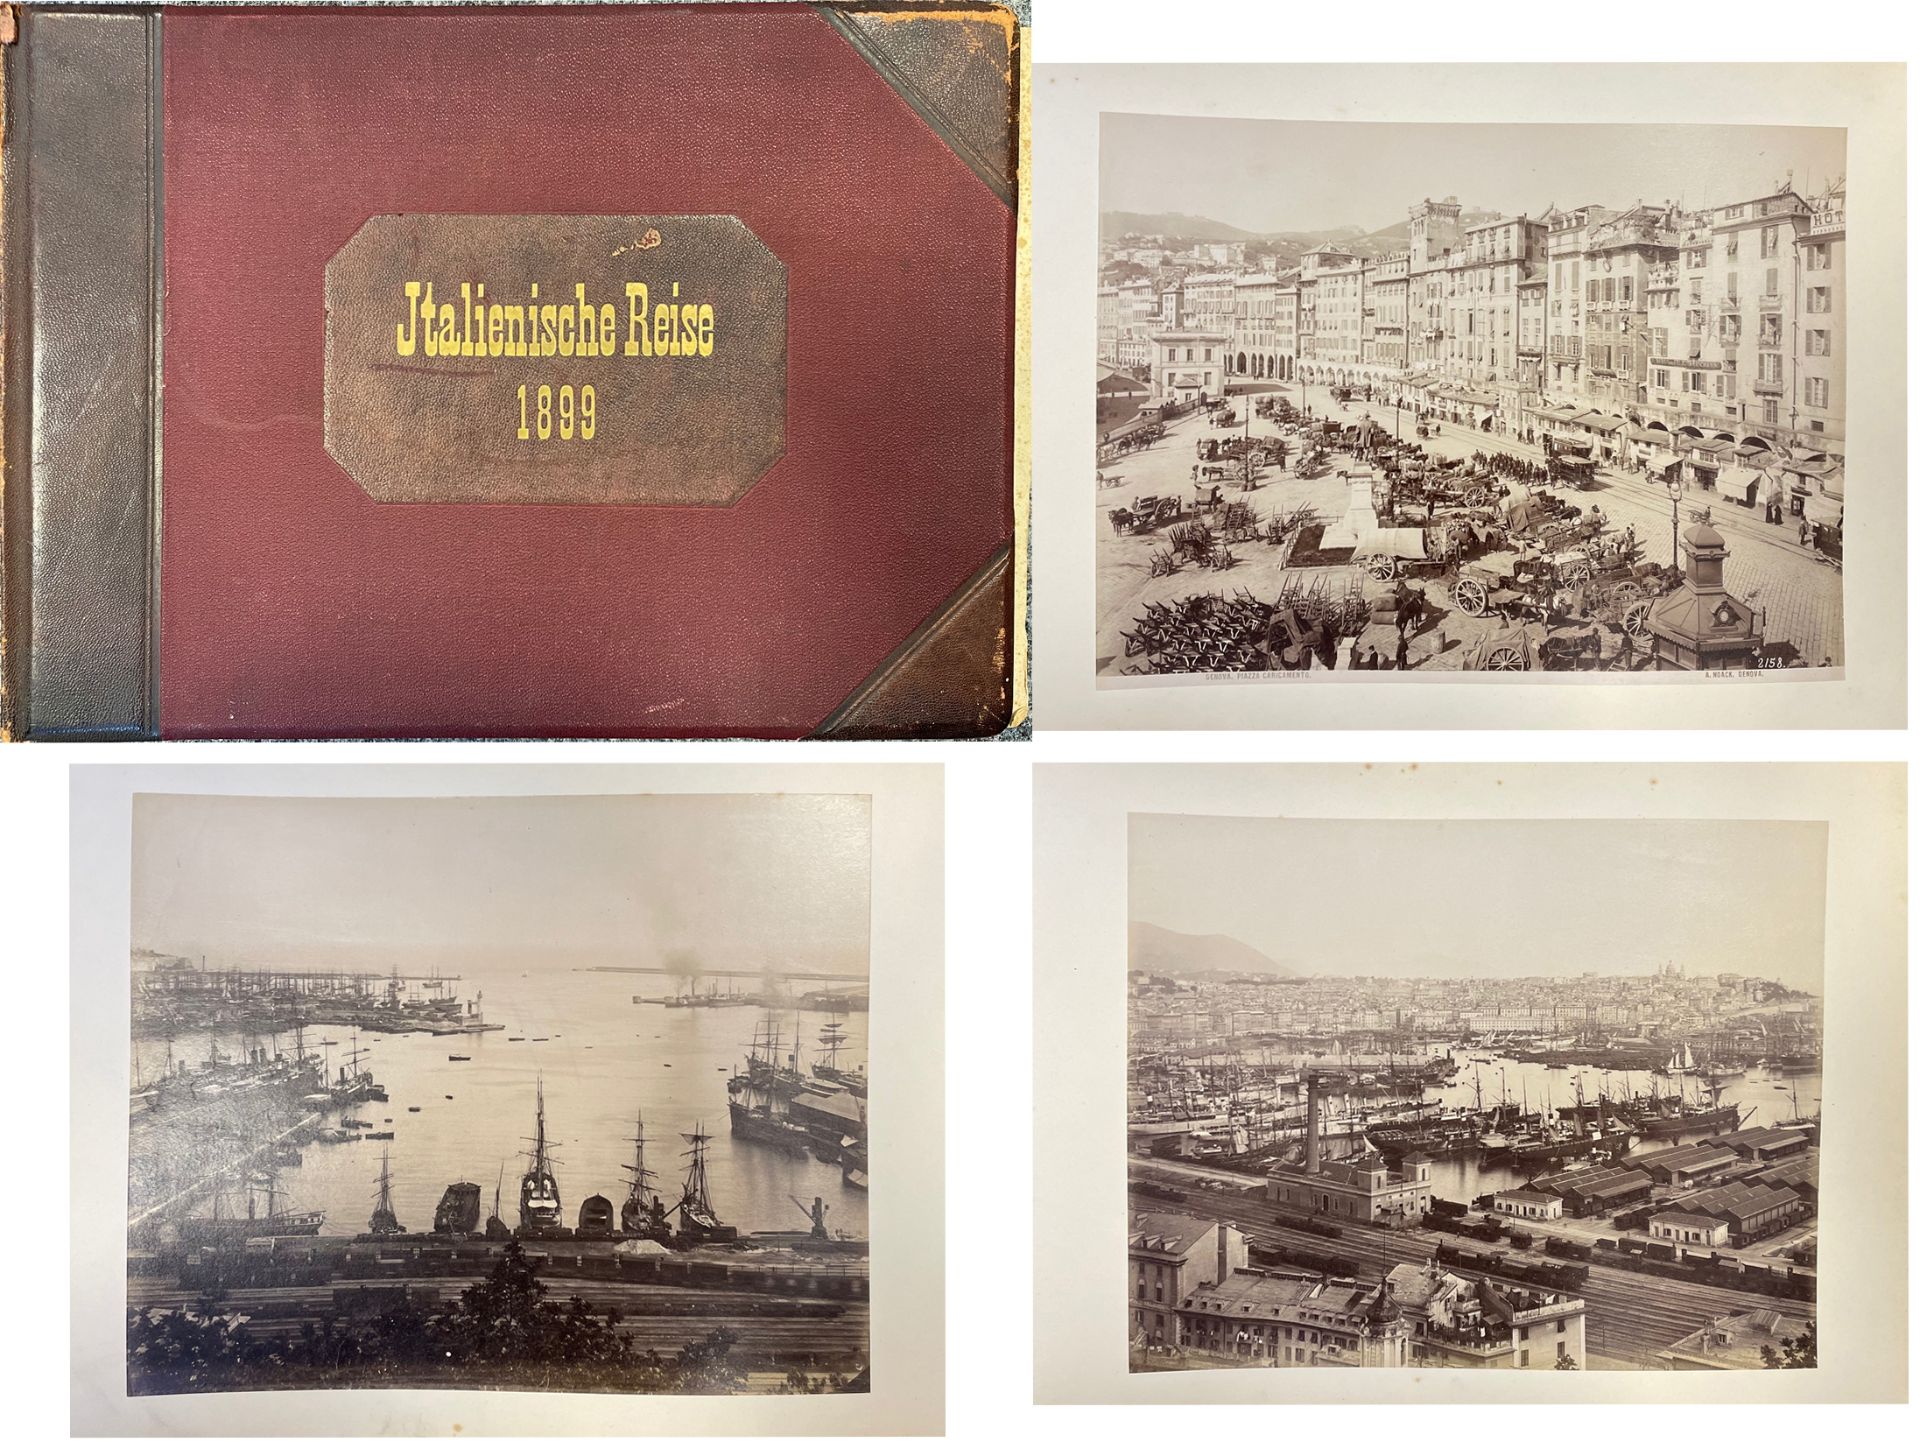 ITALIEN REISE 1899 Album mit circa 70 Fotos 27,5x22 cm